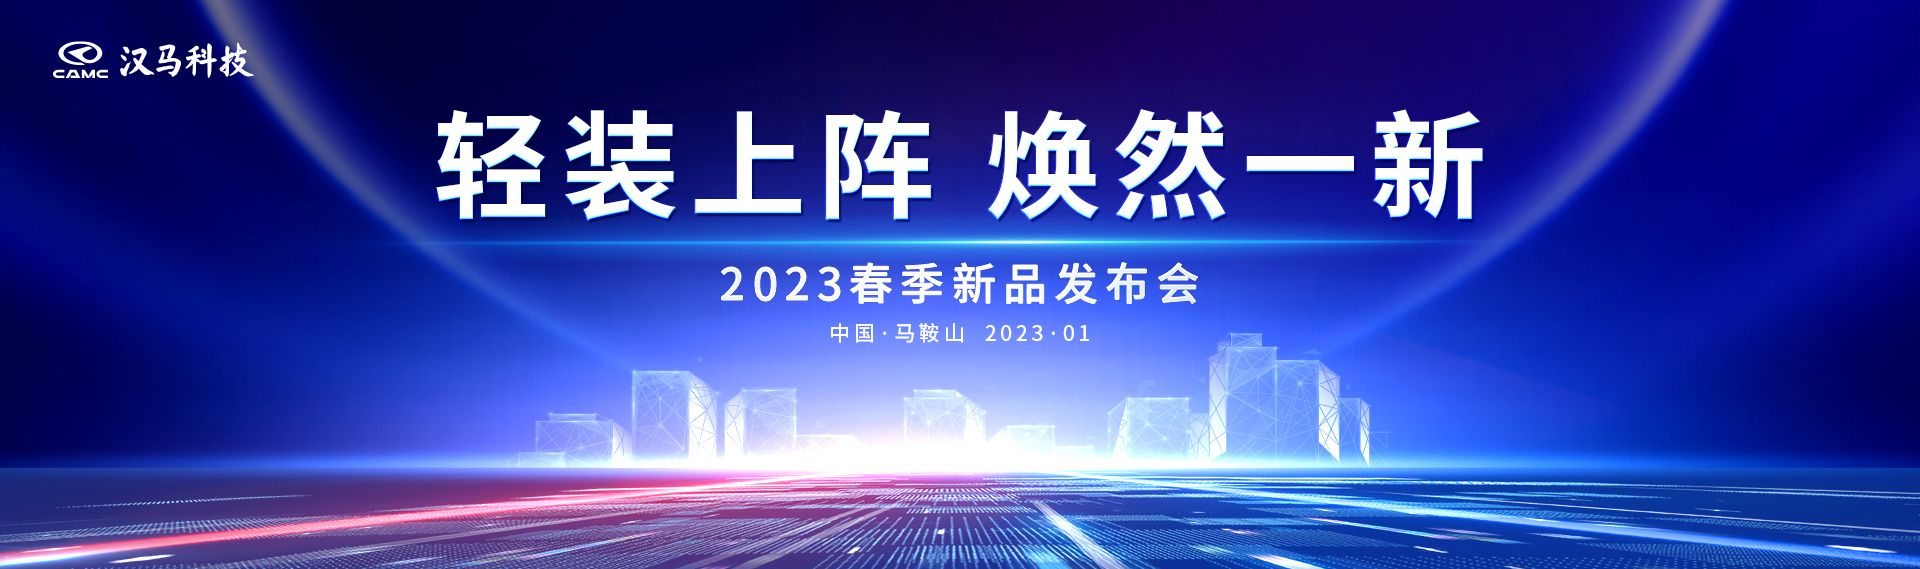 轻装上阵 焕然一新 汉马科技2023春季新品发布会